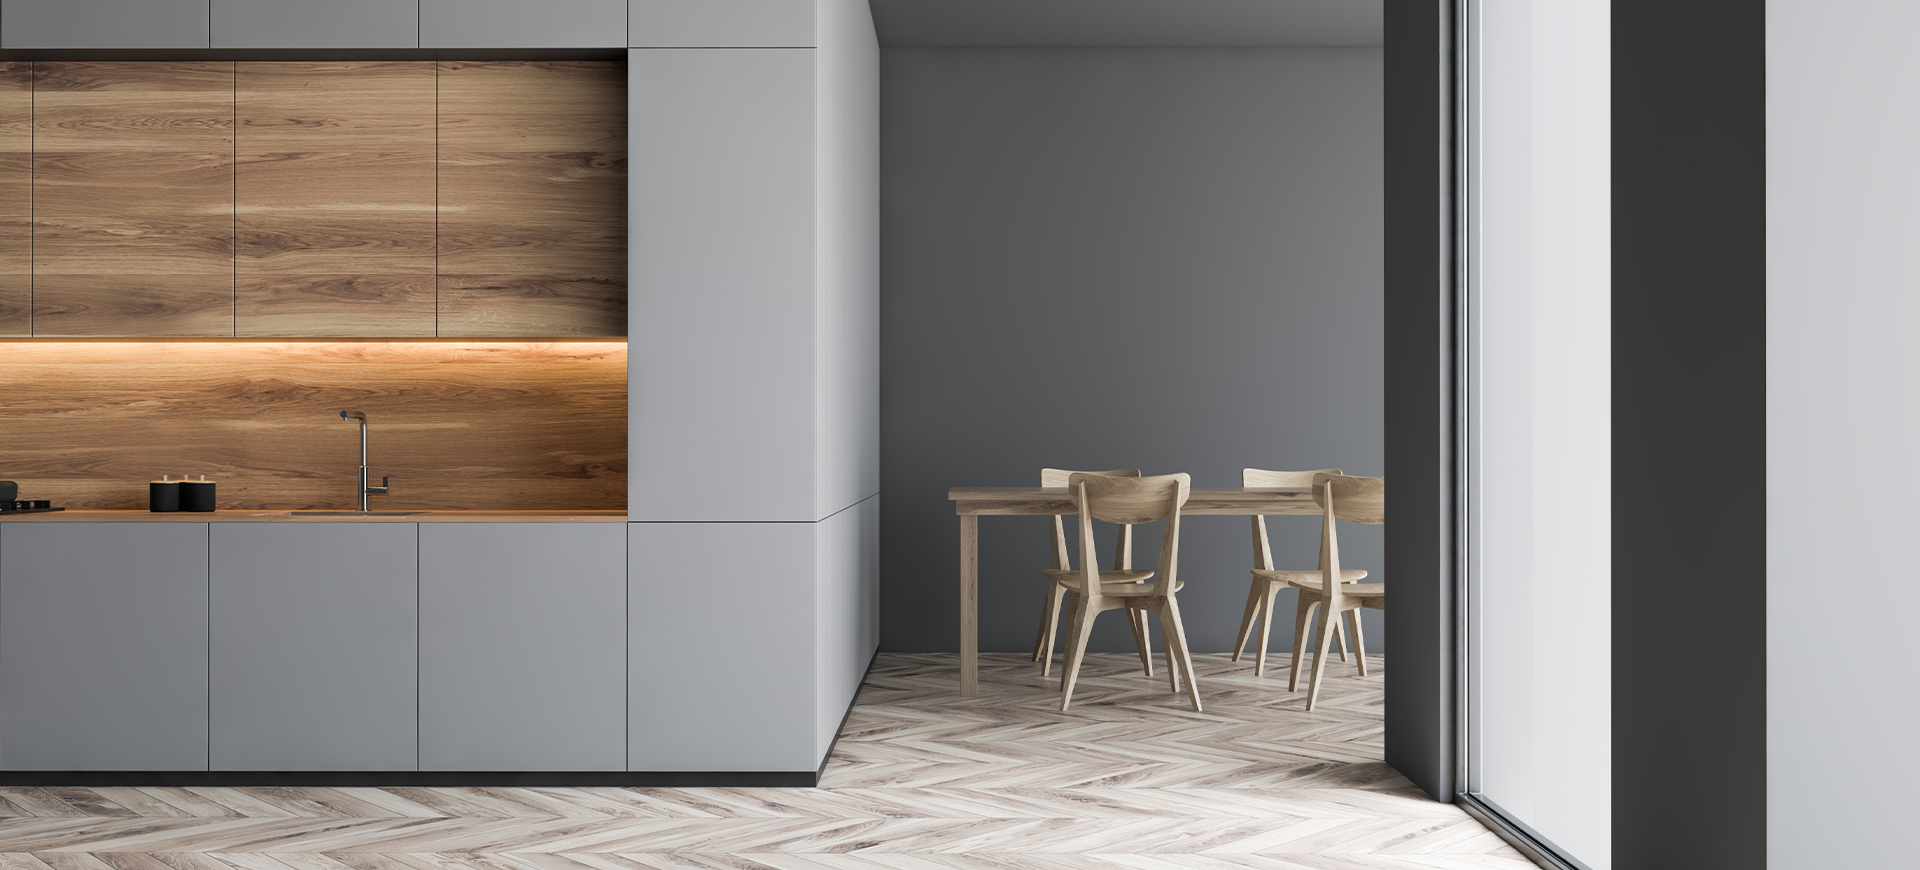 Wohnküche mit hellgrauer Küchenzeile mit Holzelementen und einem Essbereich für vier Personen